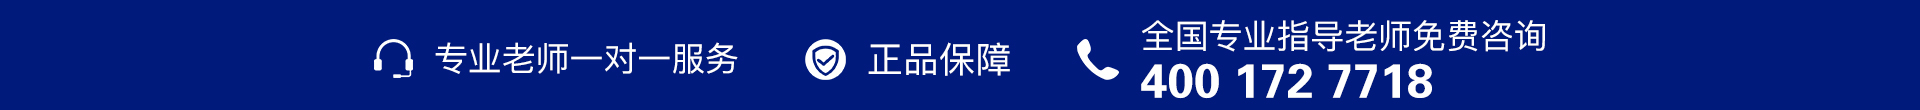 蓝色电话-banner图下方-PC - 副本 (6).jpg